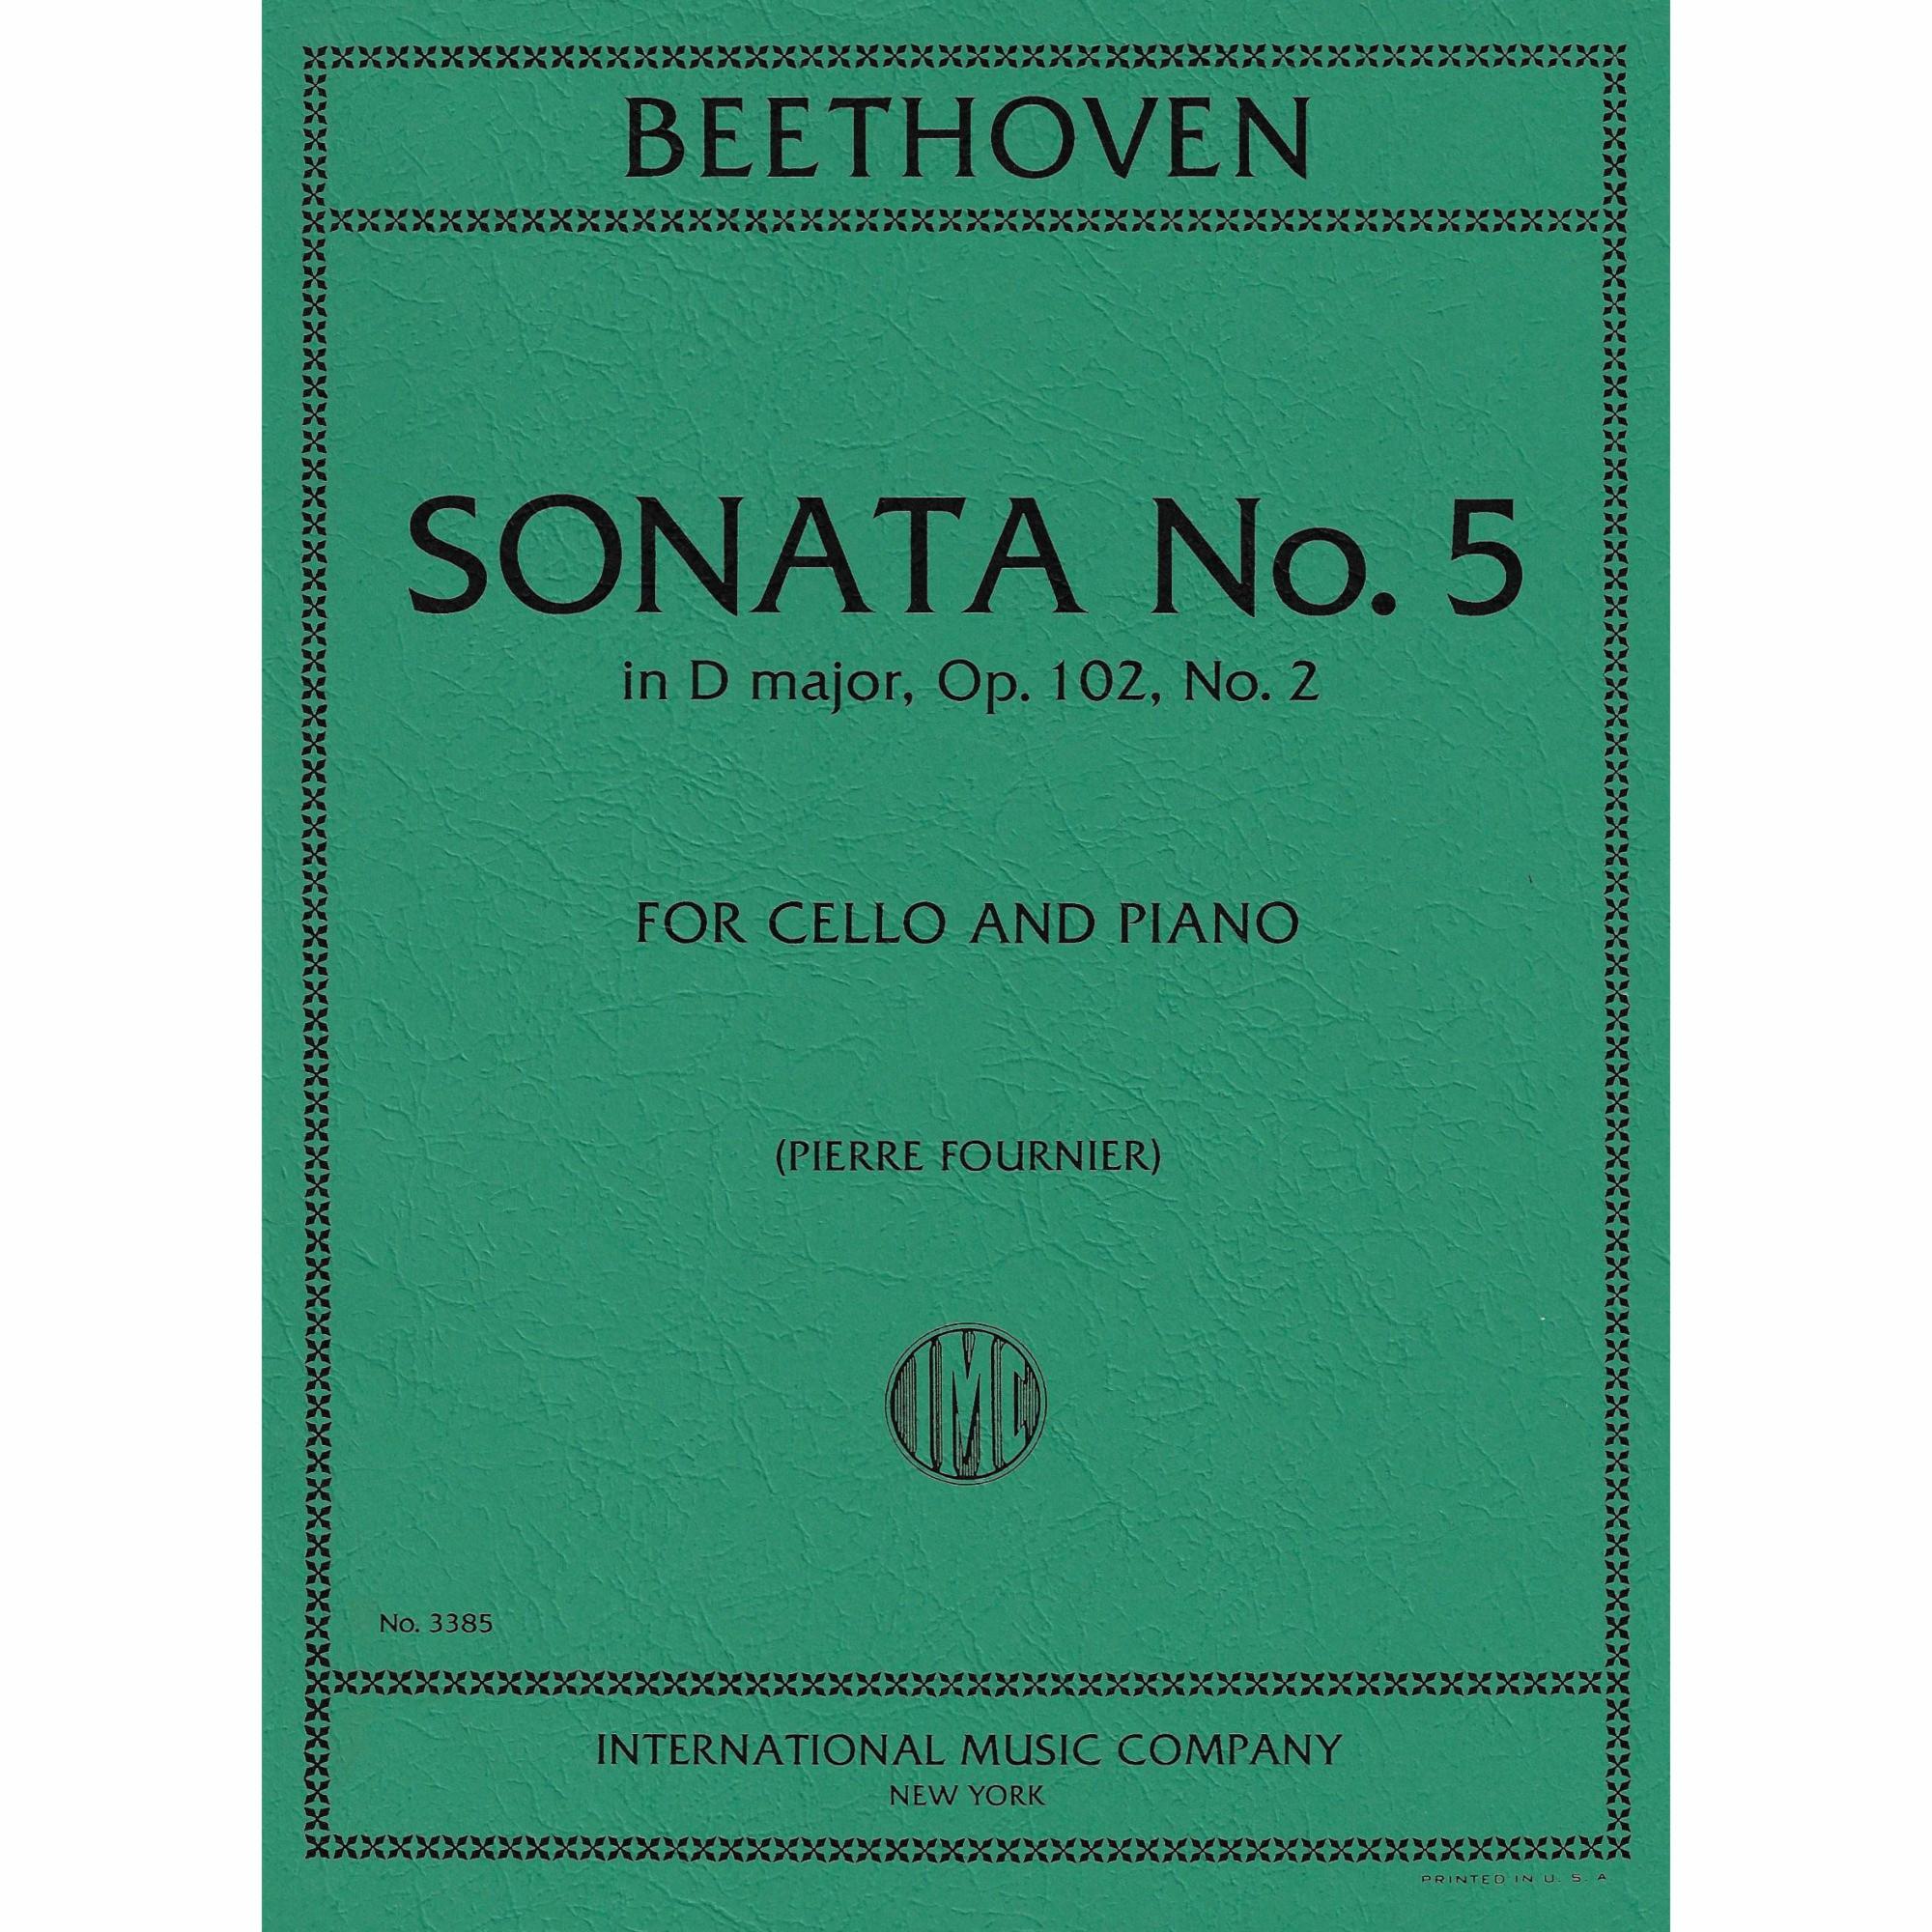 Cello Sonata No. 5 in D Major, Op. 102, No. 2